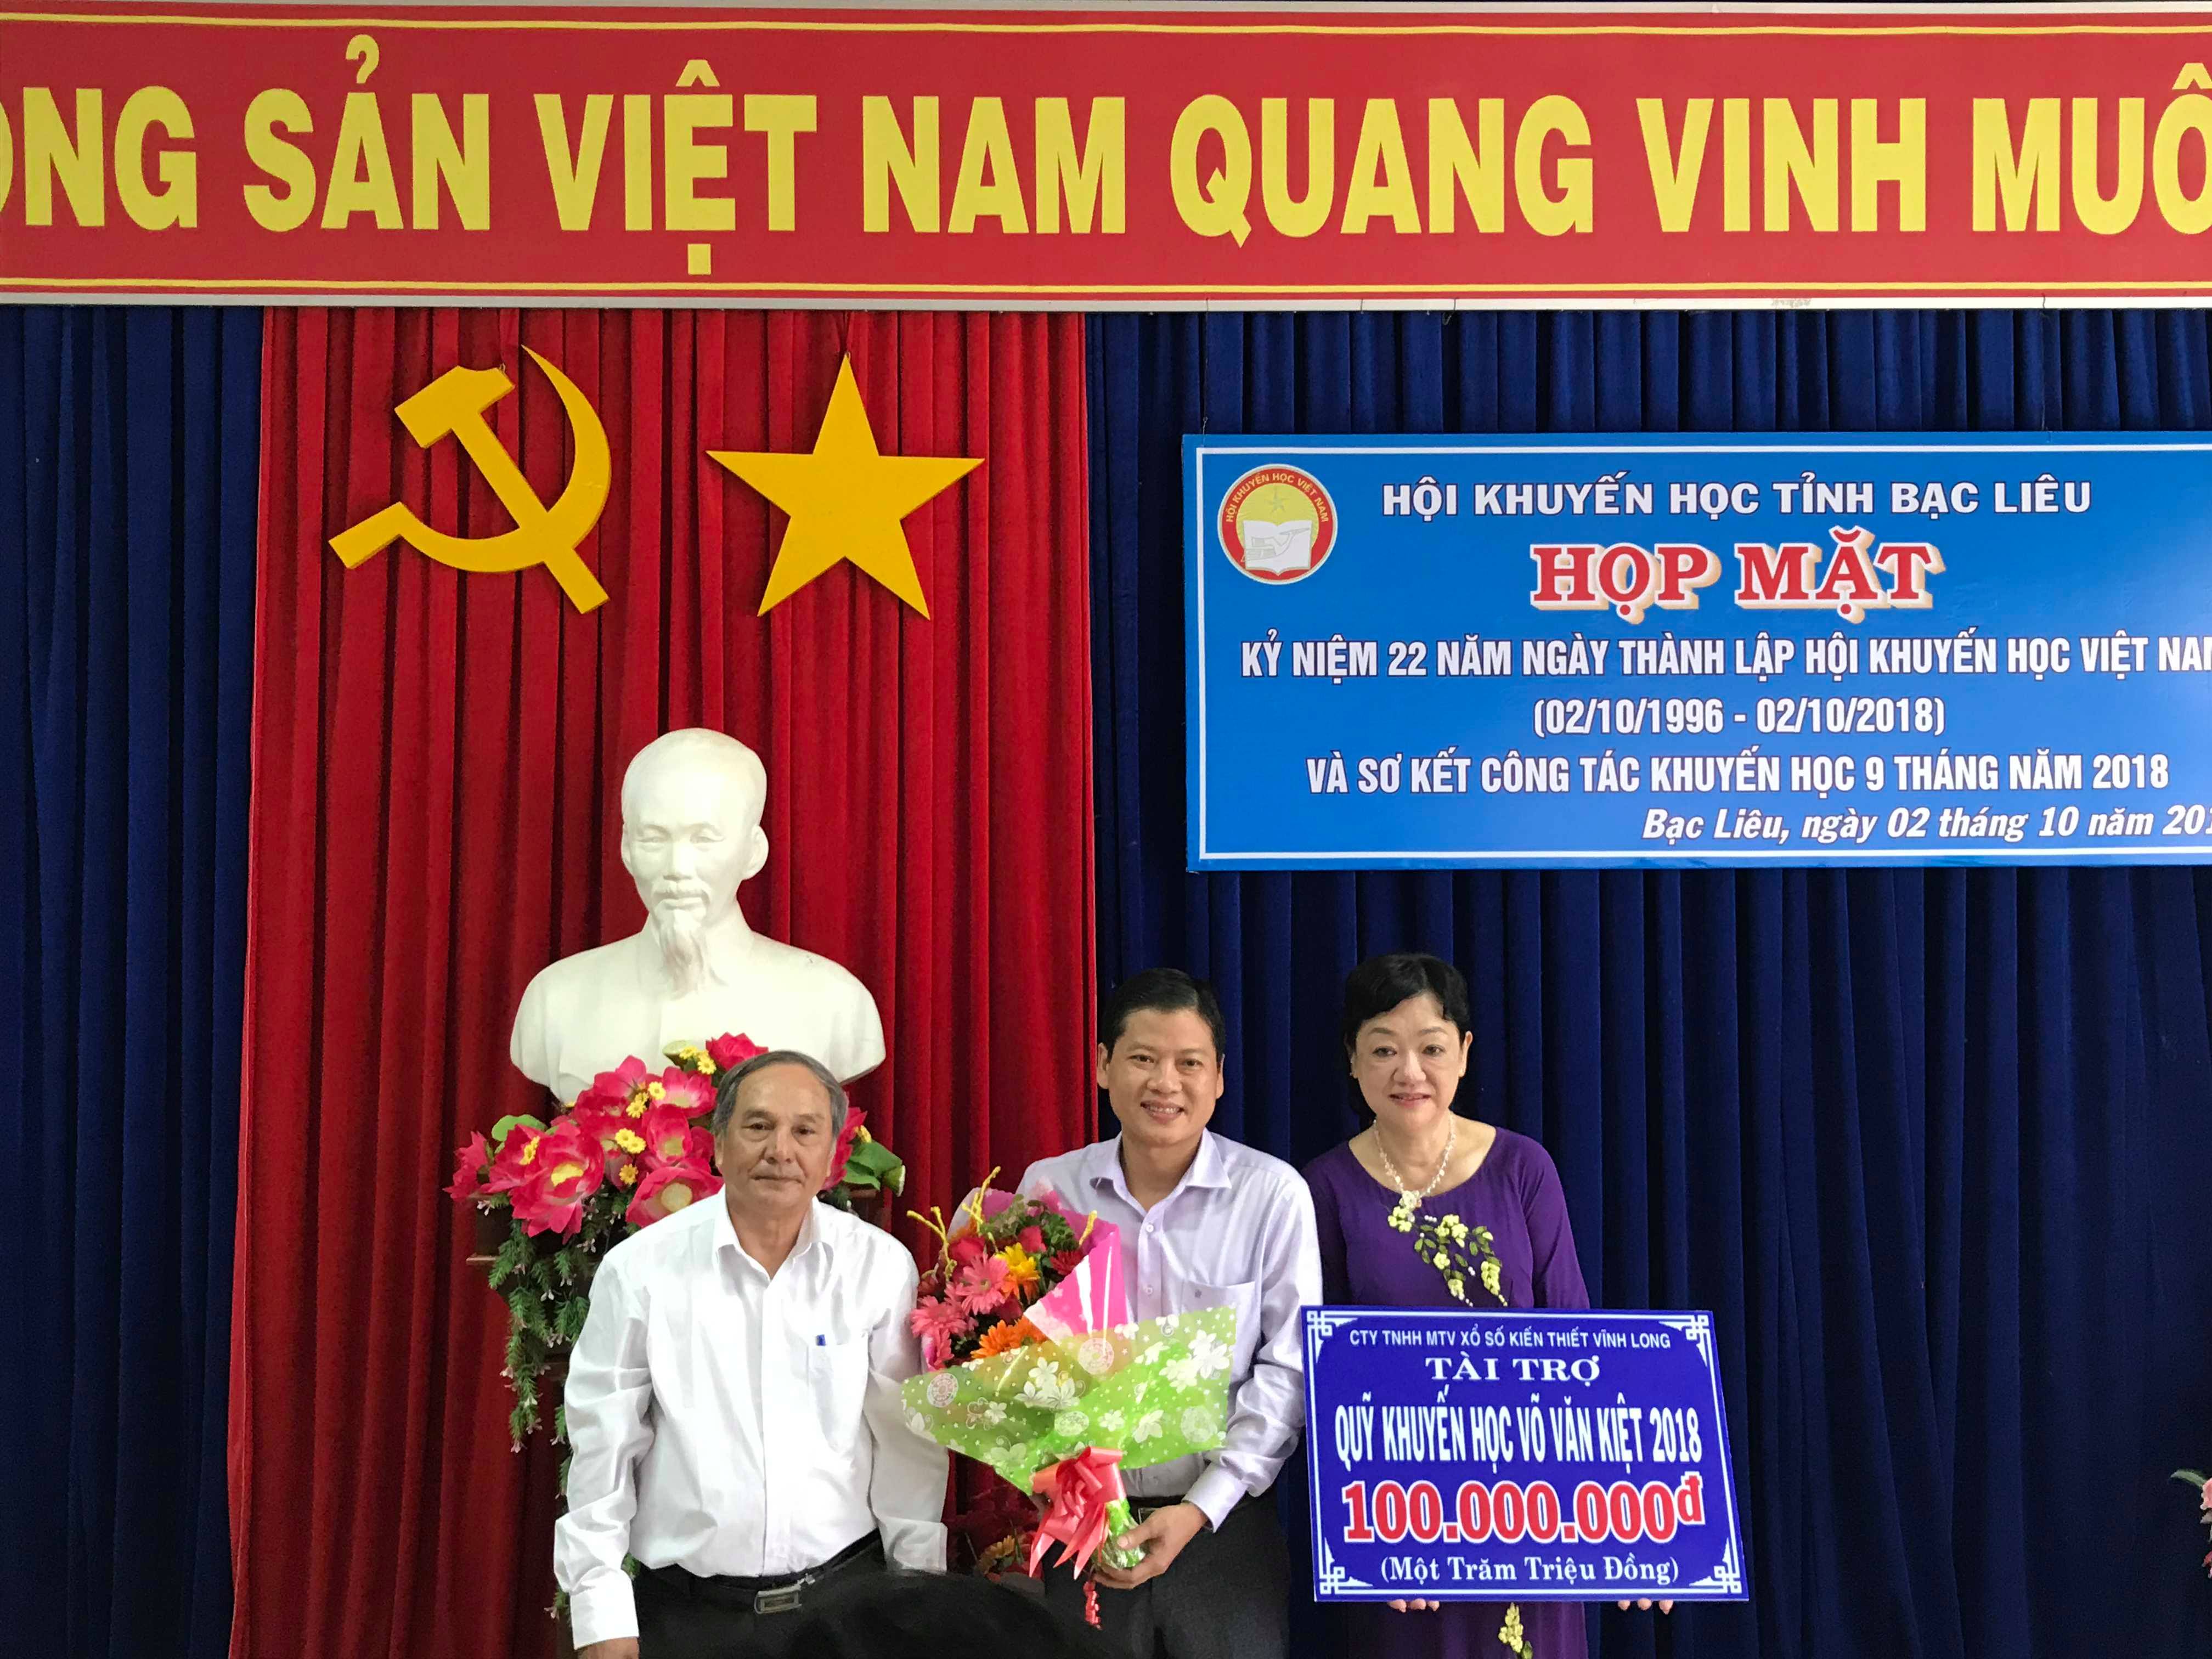 Công ty Xổ số Vĩnh Long trao quỹ khuyến học Võ Văn Kiệt 100 triệu đồng